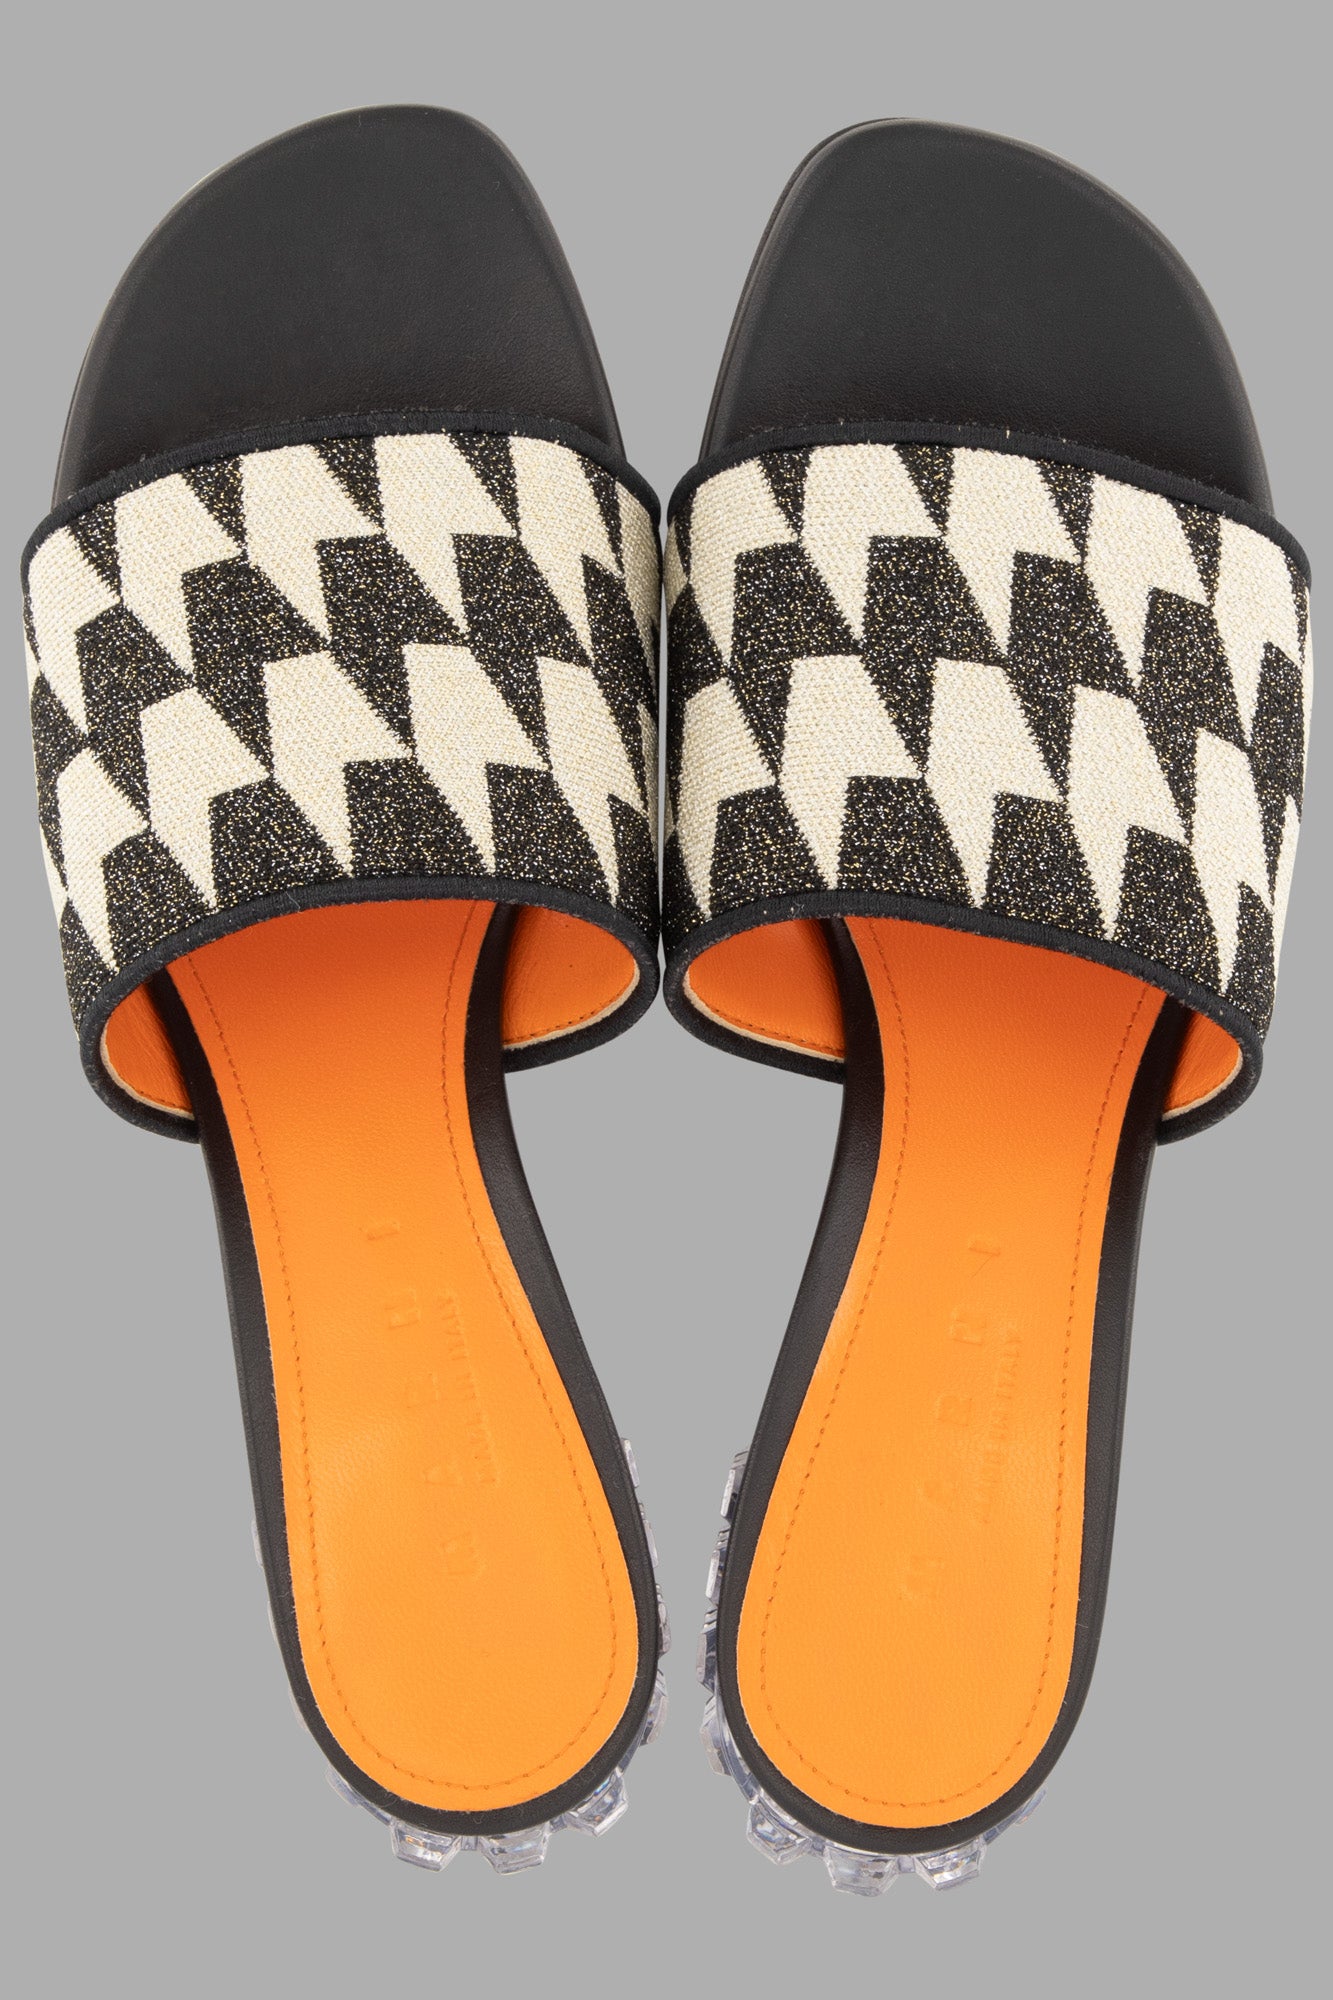 Crystal-heel patterned sandals